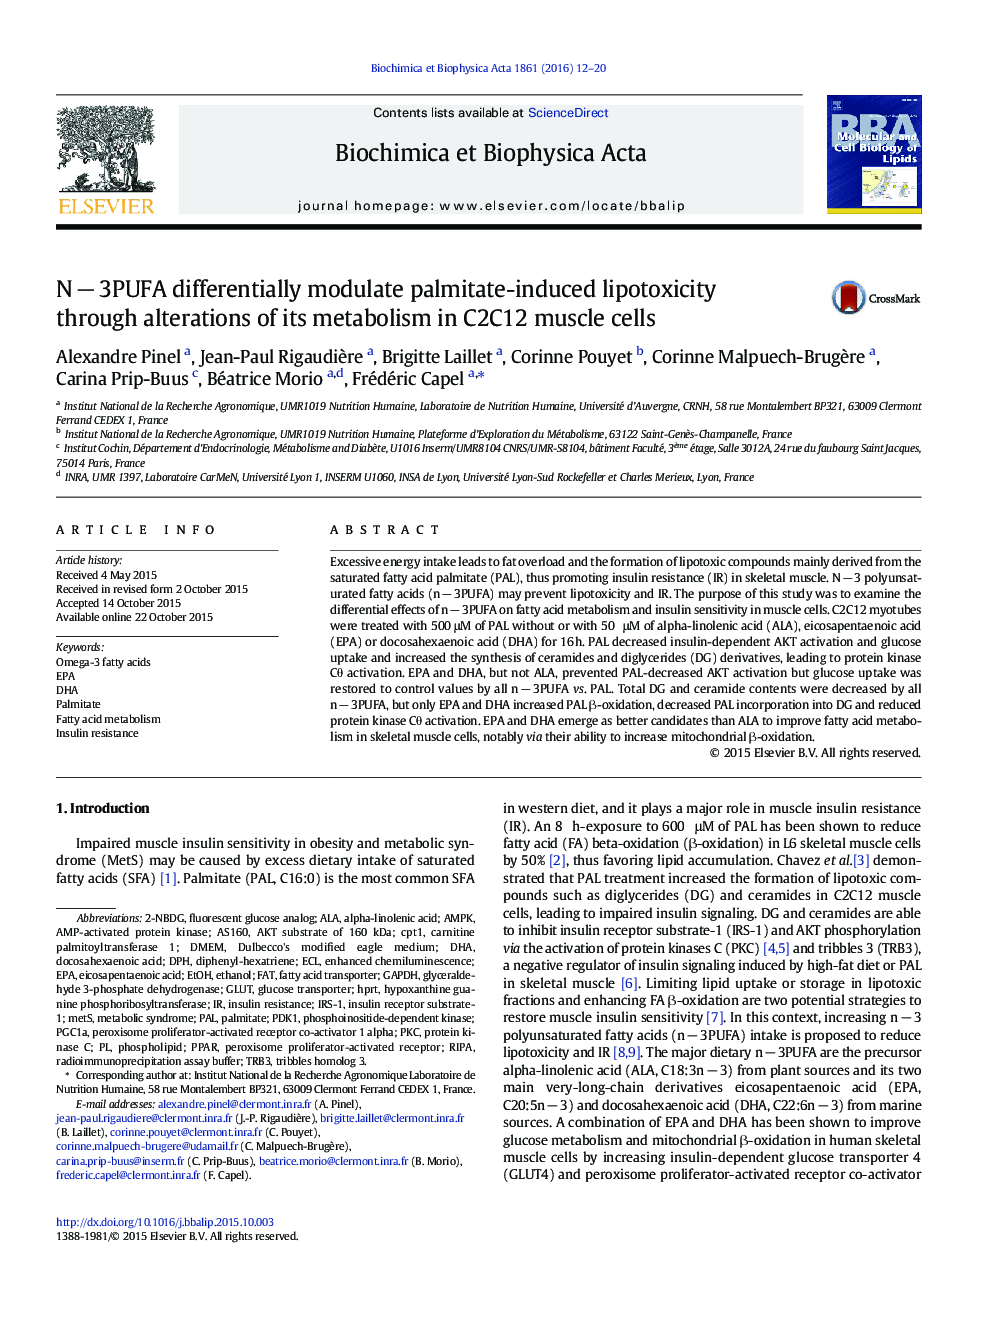 NÂ âÂ 3PUFA differentially modulate palmitate-induced lipotoxicity through alterations of its metabolism in C2C12 muscle cells